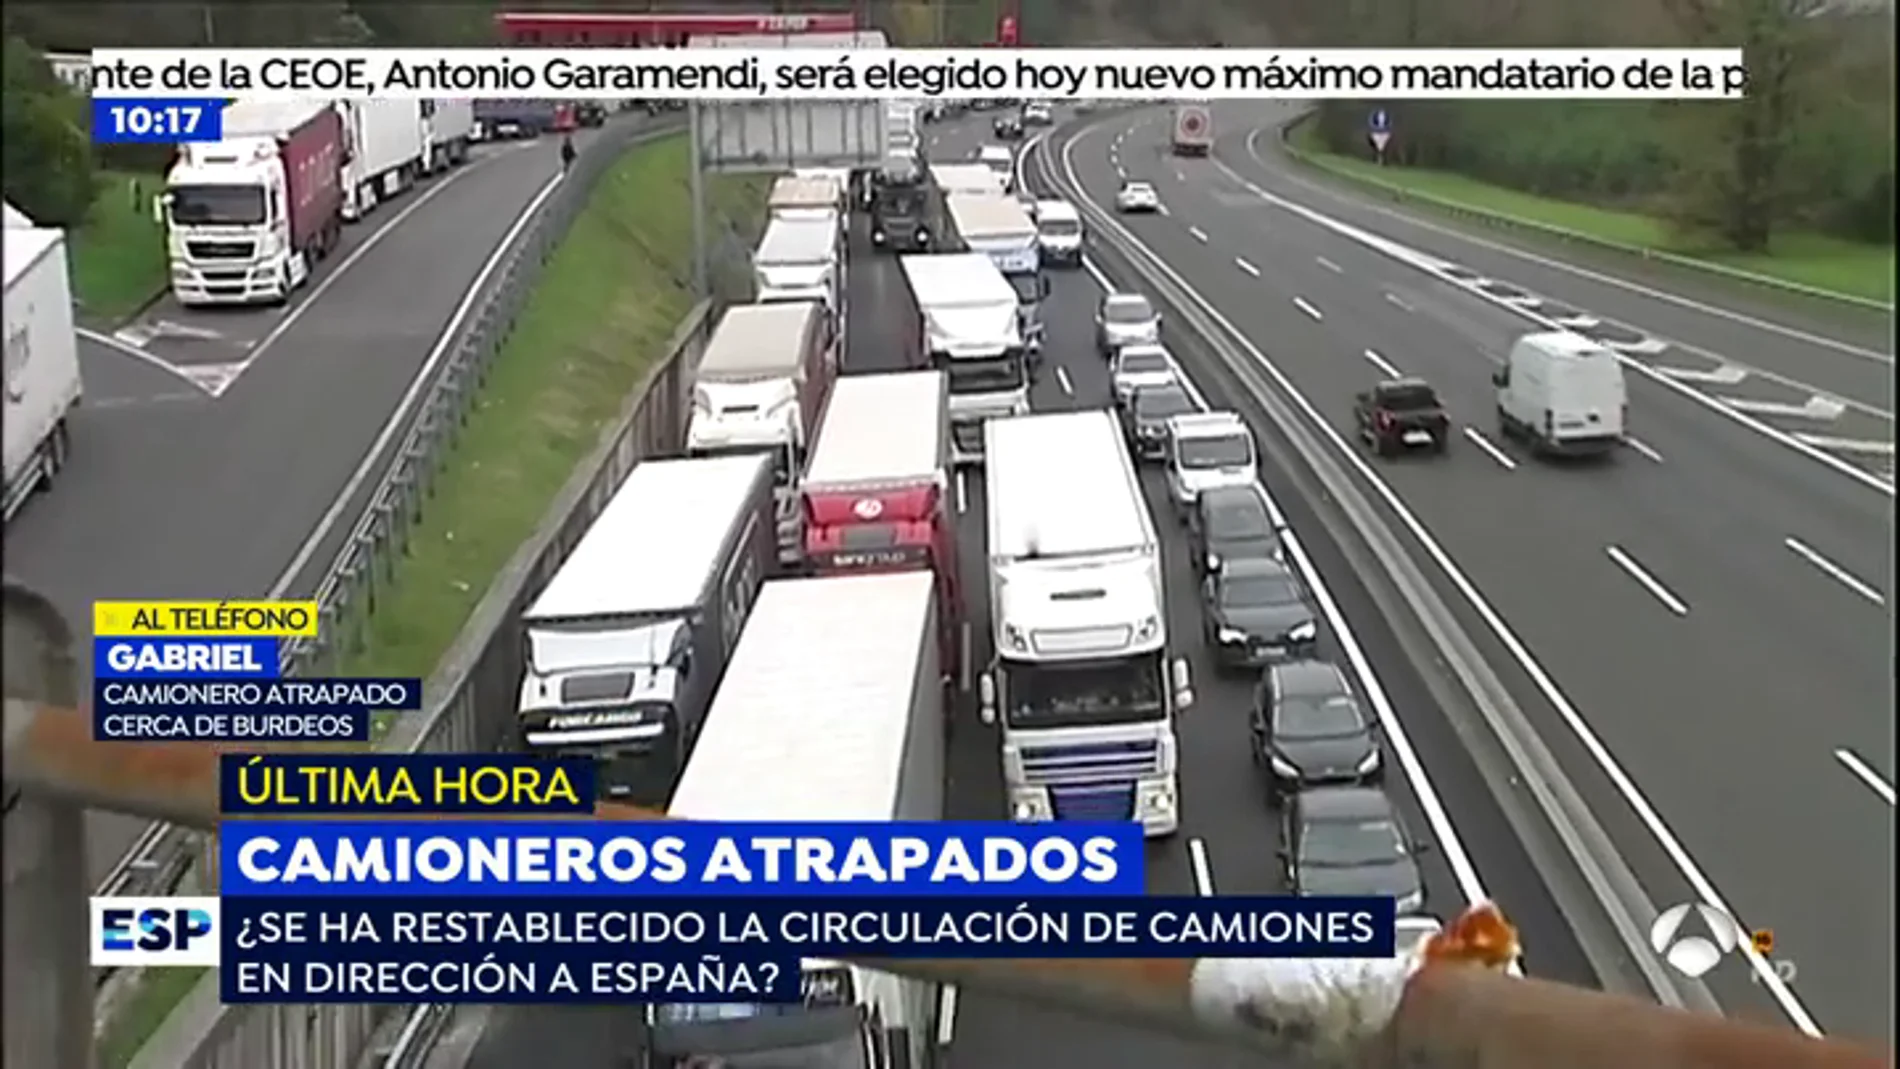 Camionero atrapado en la frontera: "Los piquetes nos amenazan con quemar nuestros camiones"